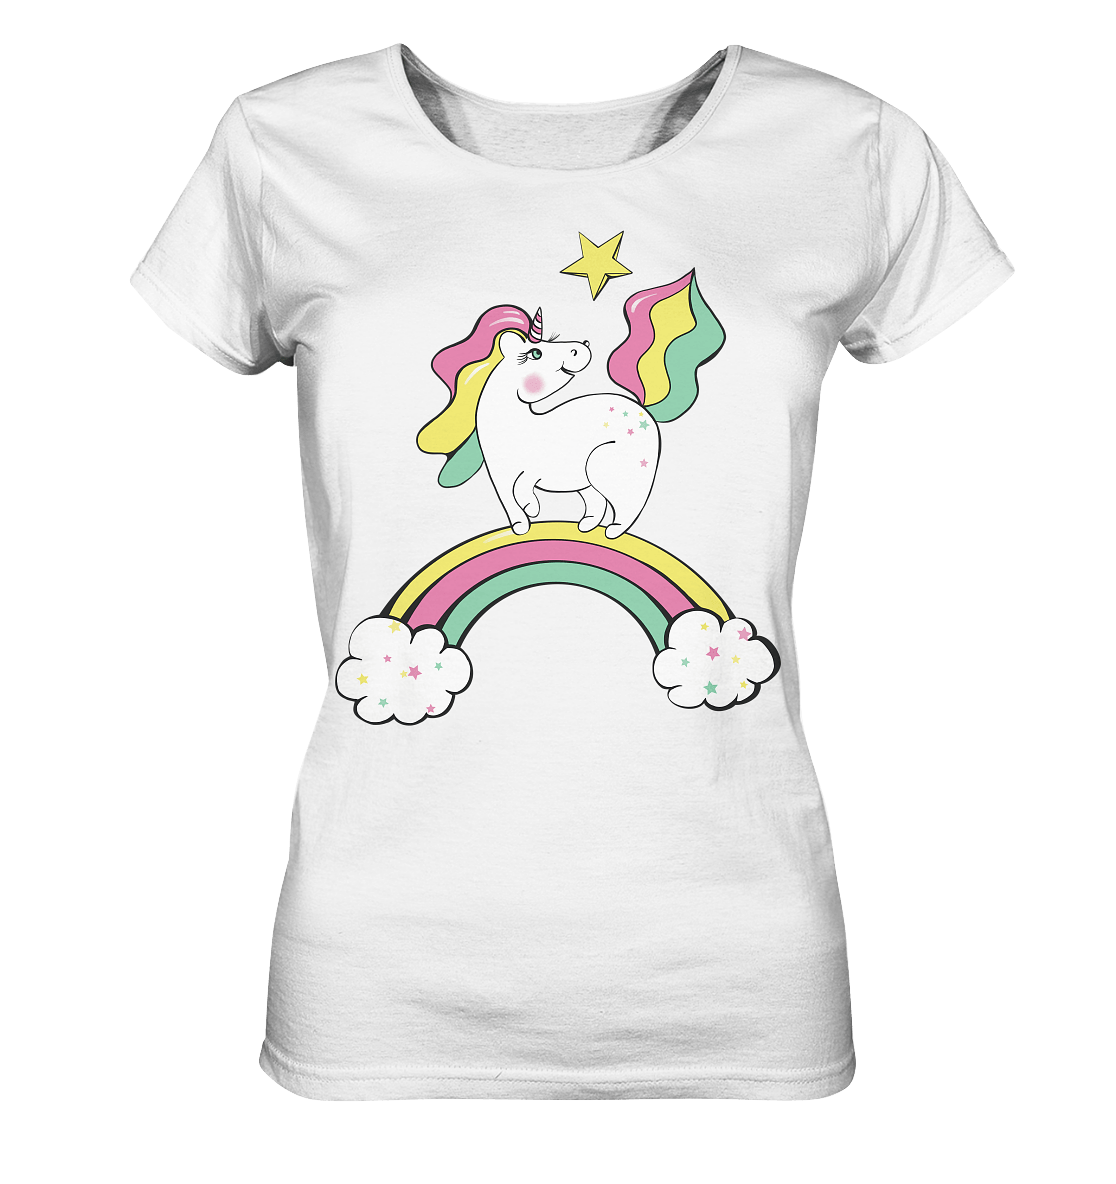 einhorn t shirt in weiß mit Einhorn Zeichnung auf dem Regenbogen von Bloominic